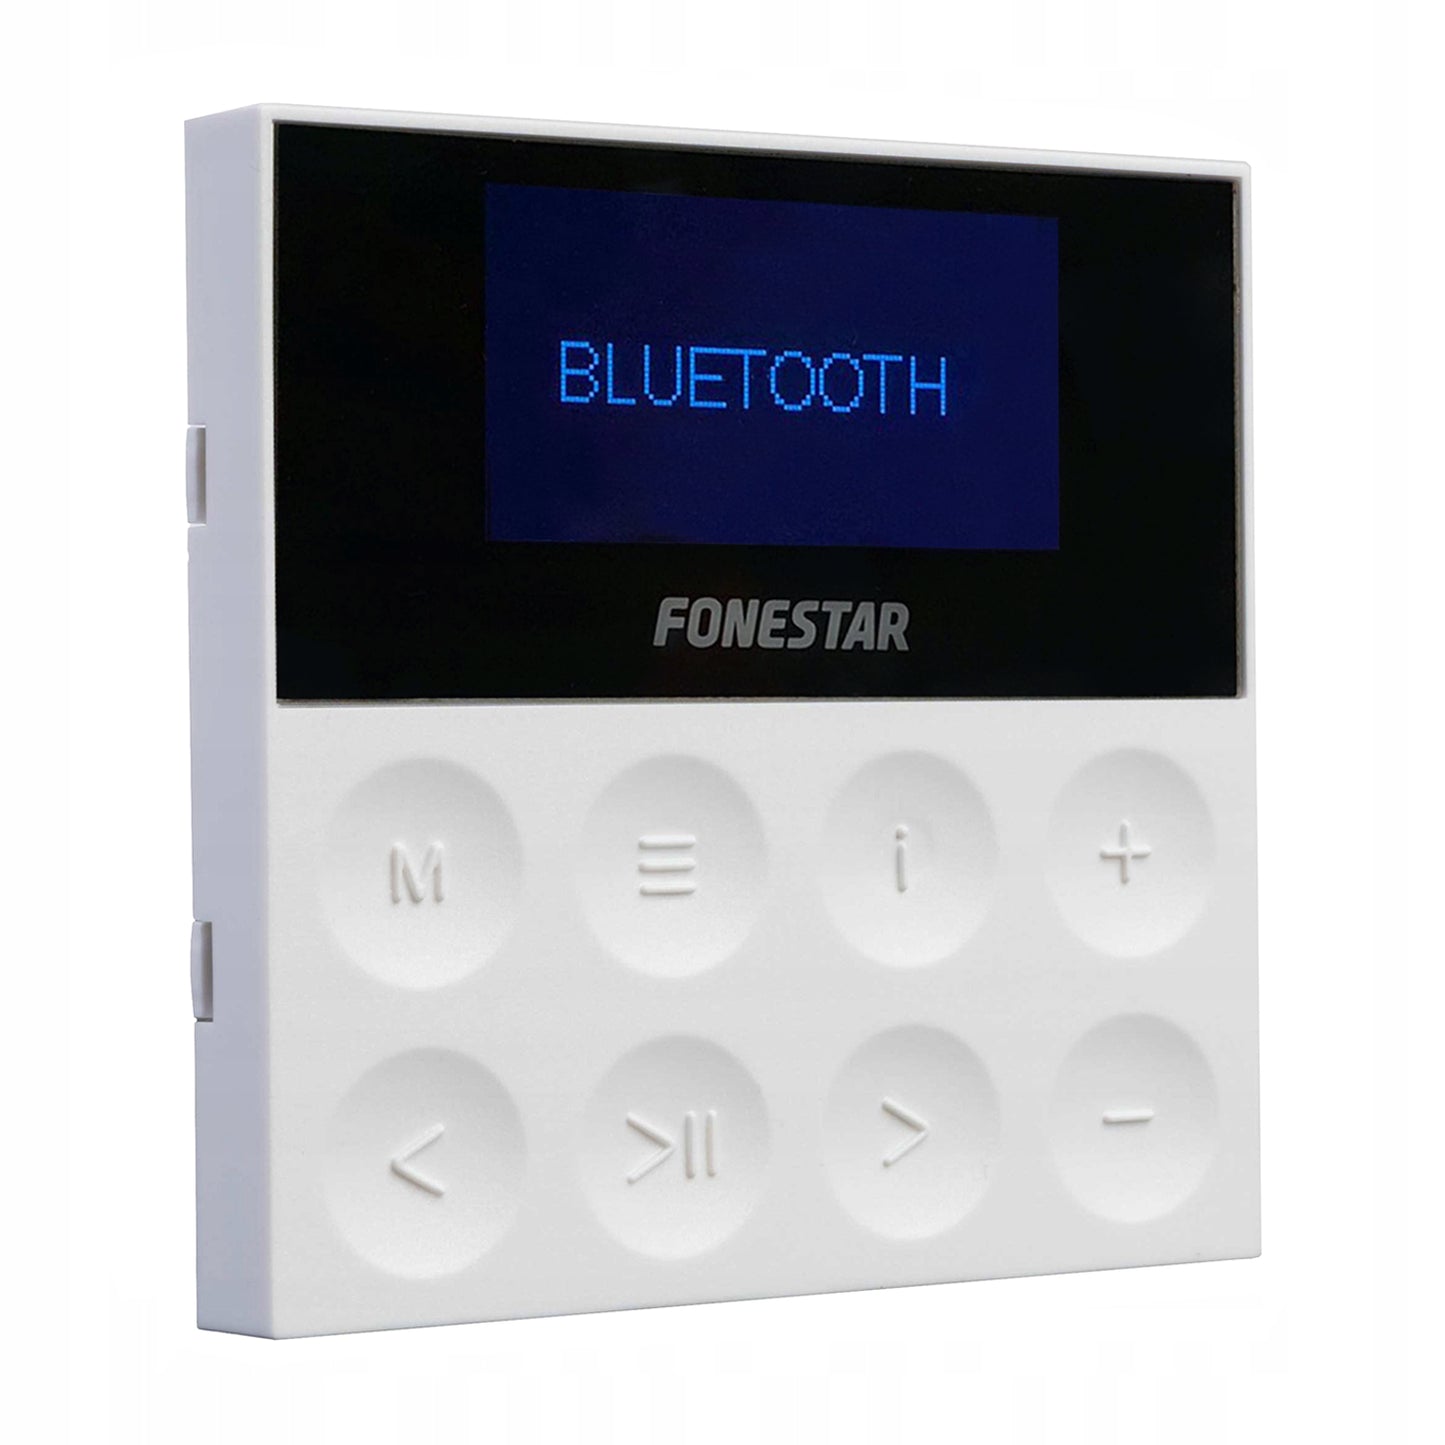 Fonestar KS-AMP Sistema audio amplificatore player da parete, telecomando per controllo remoto incluso, connettività Bluetooth, USB, MP3, senza distorsioni